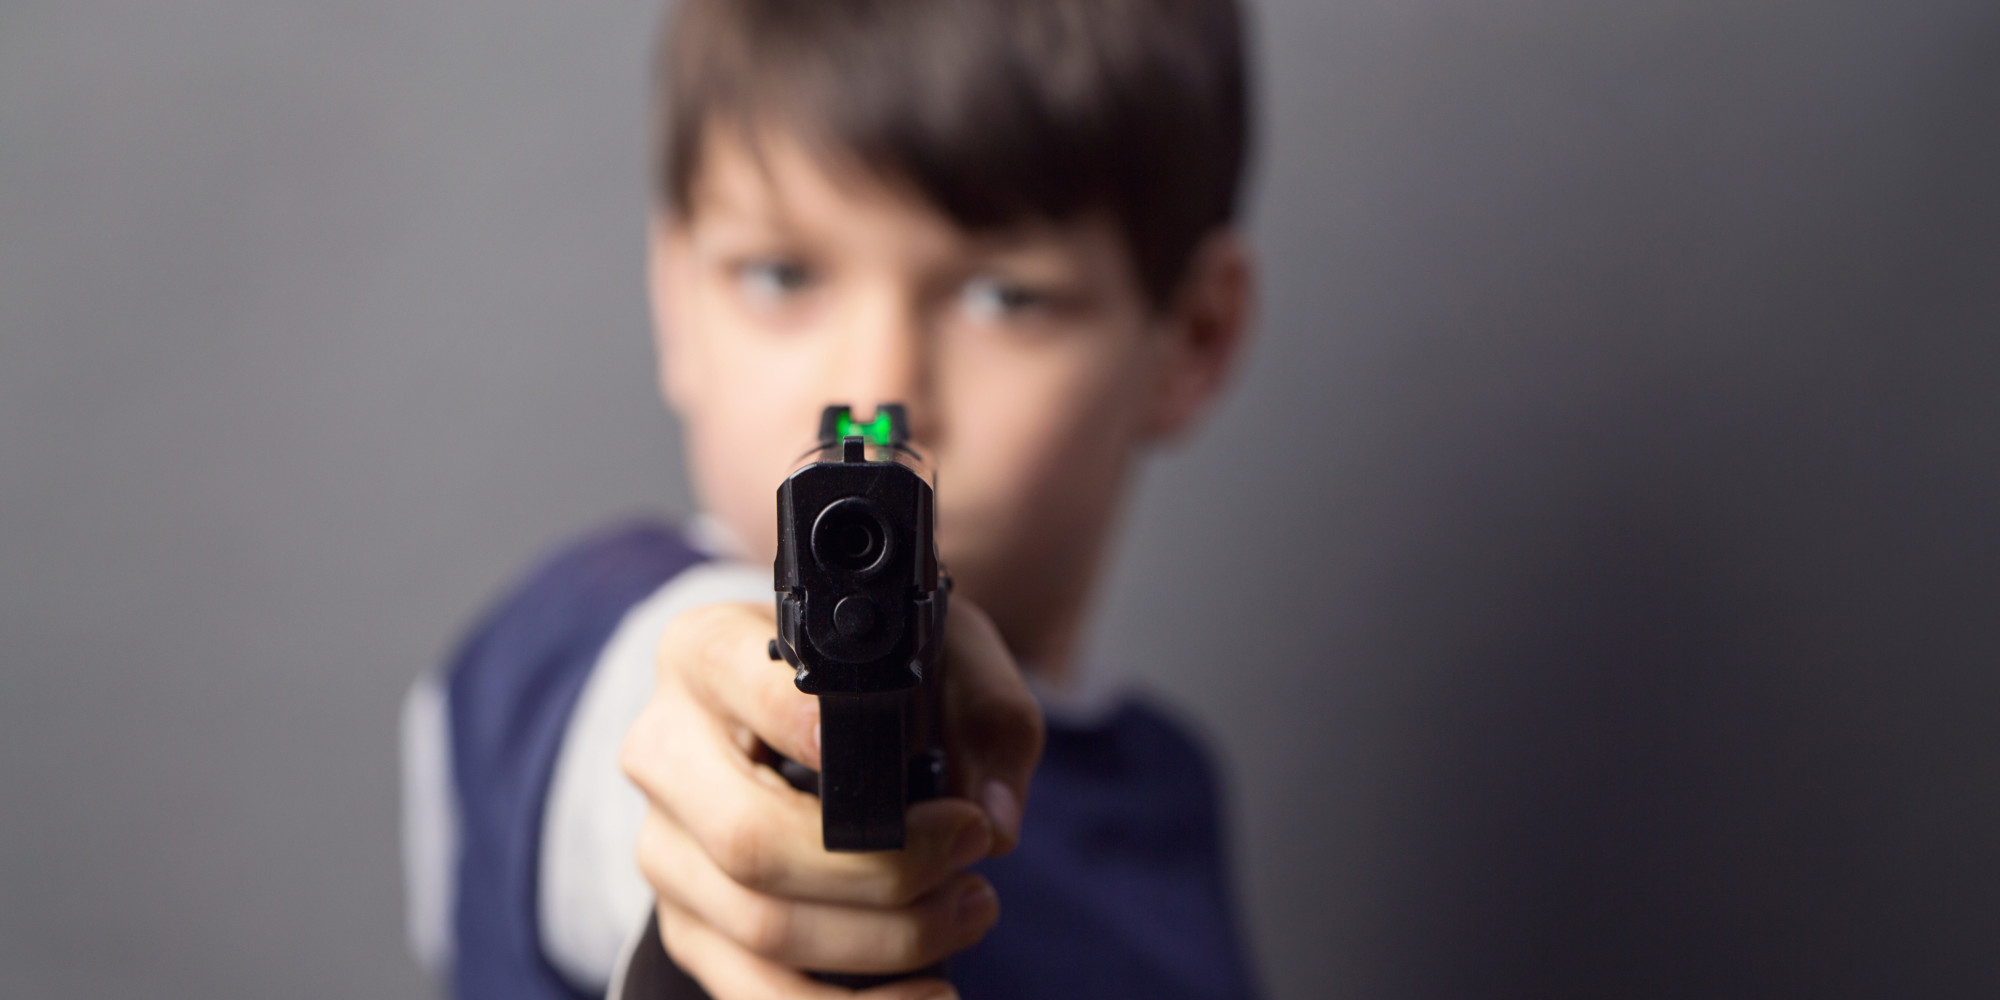 Boy with handgun